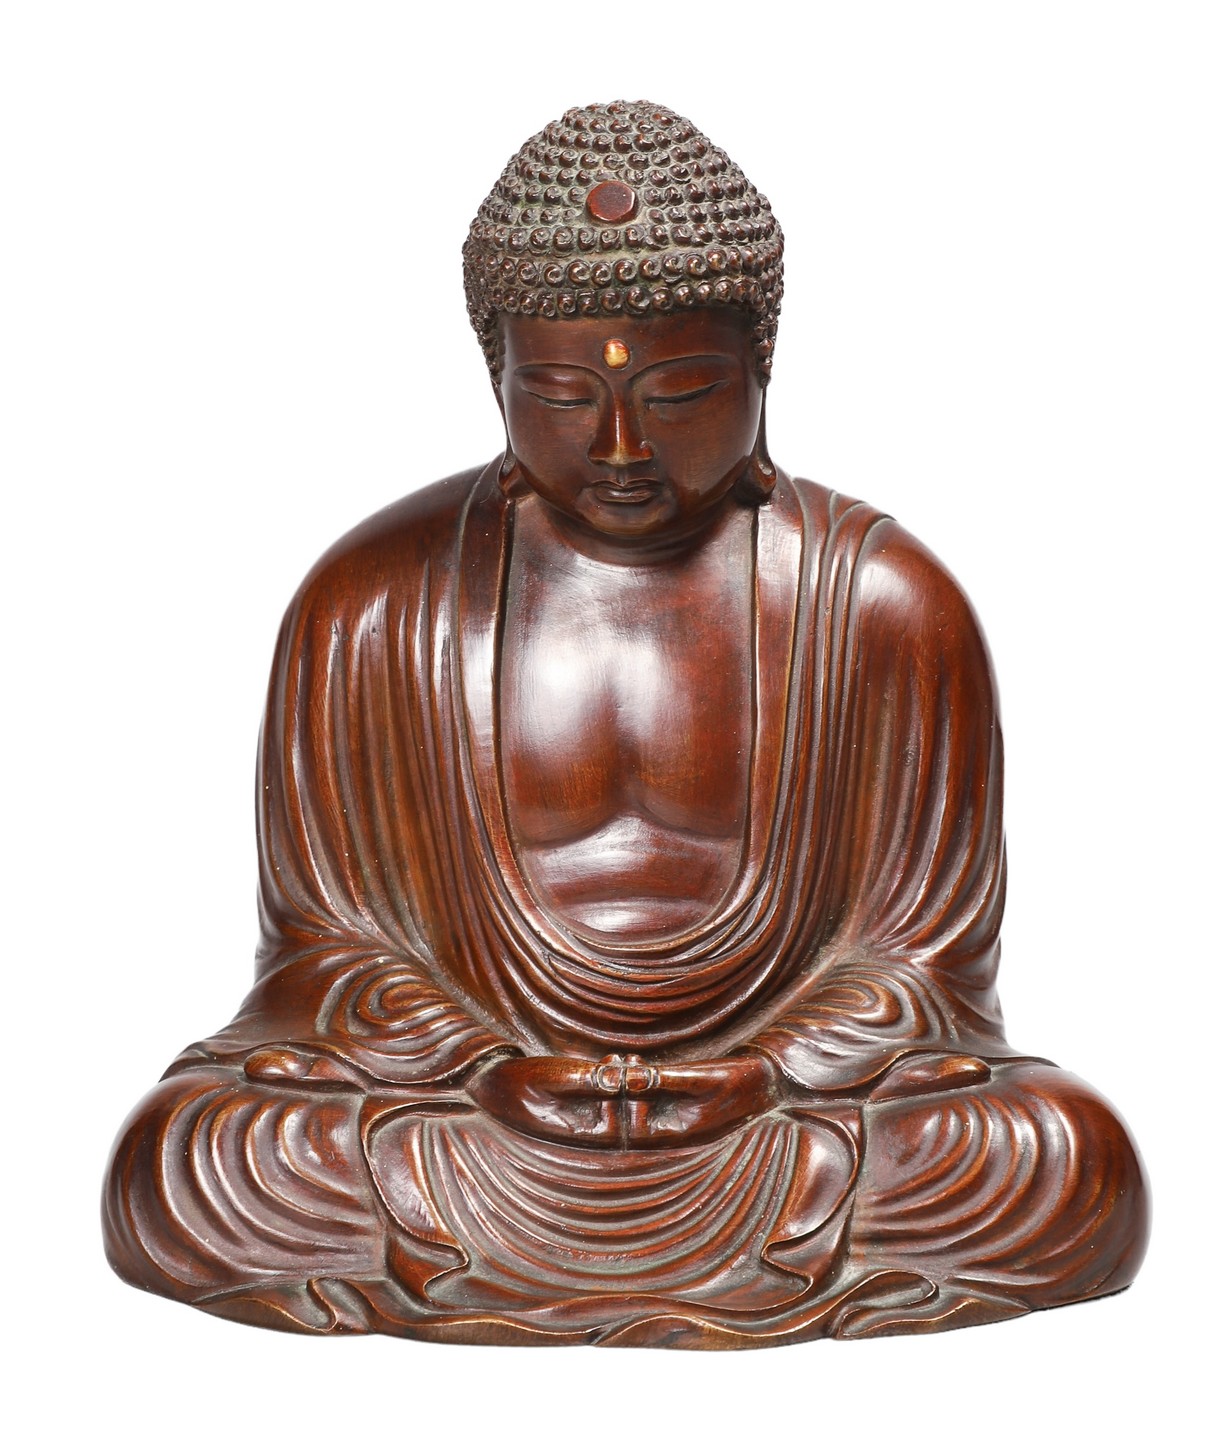 Japanese Great Buddha of Kamakura